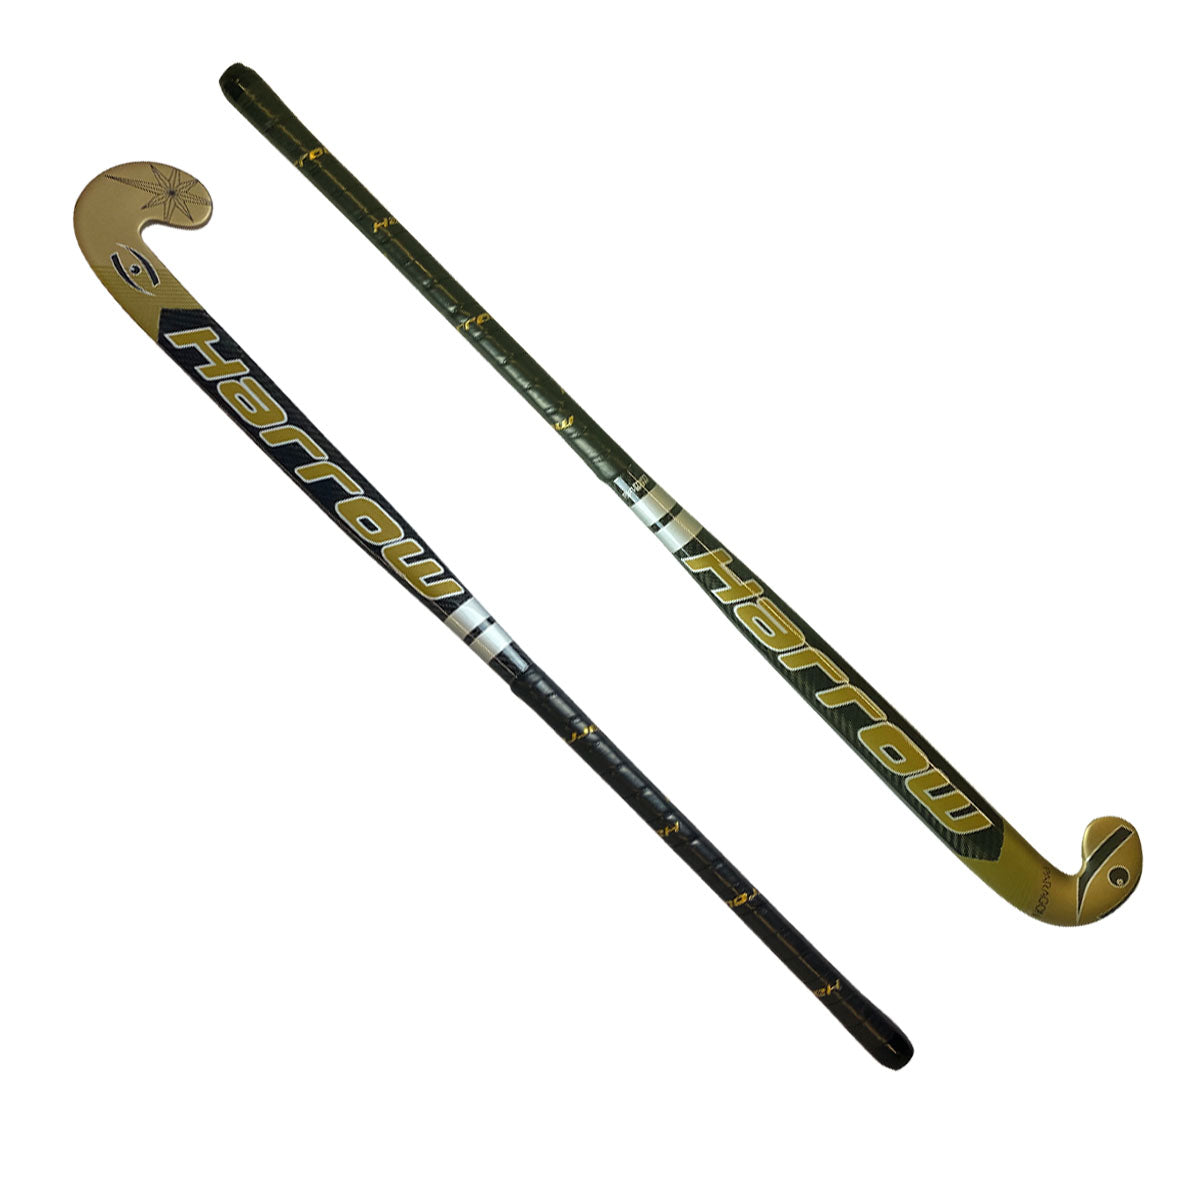 Field Hockey Sticks in Field Hockey 